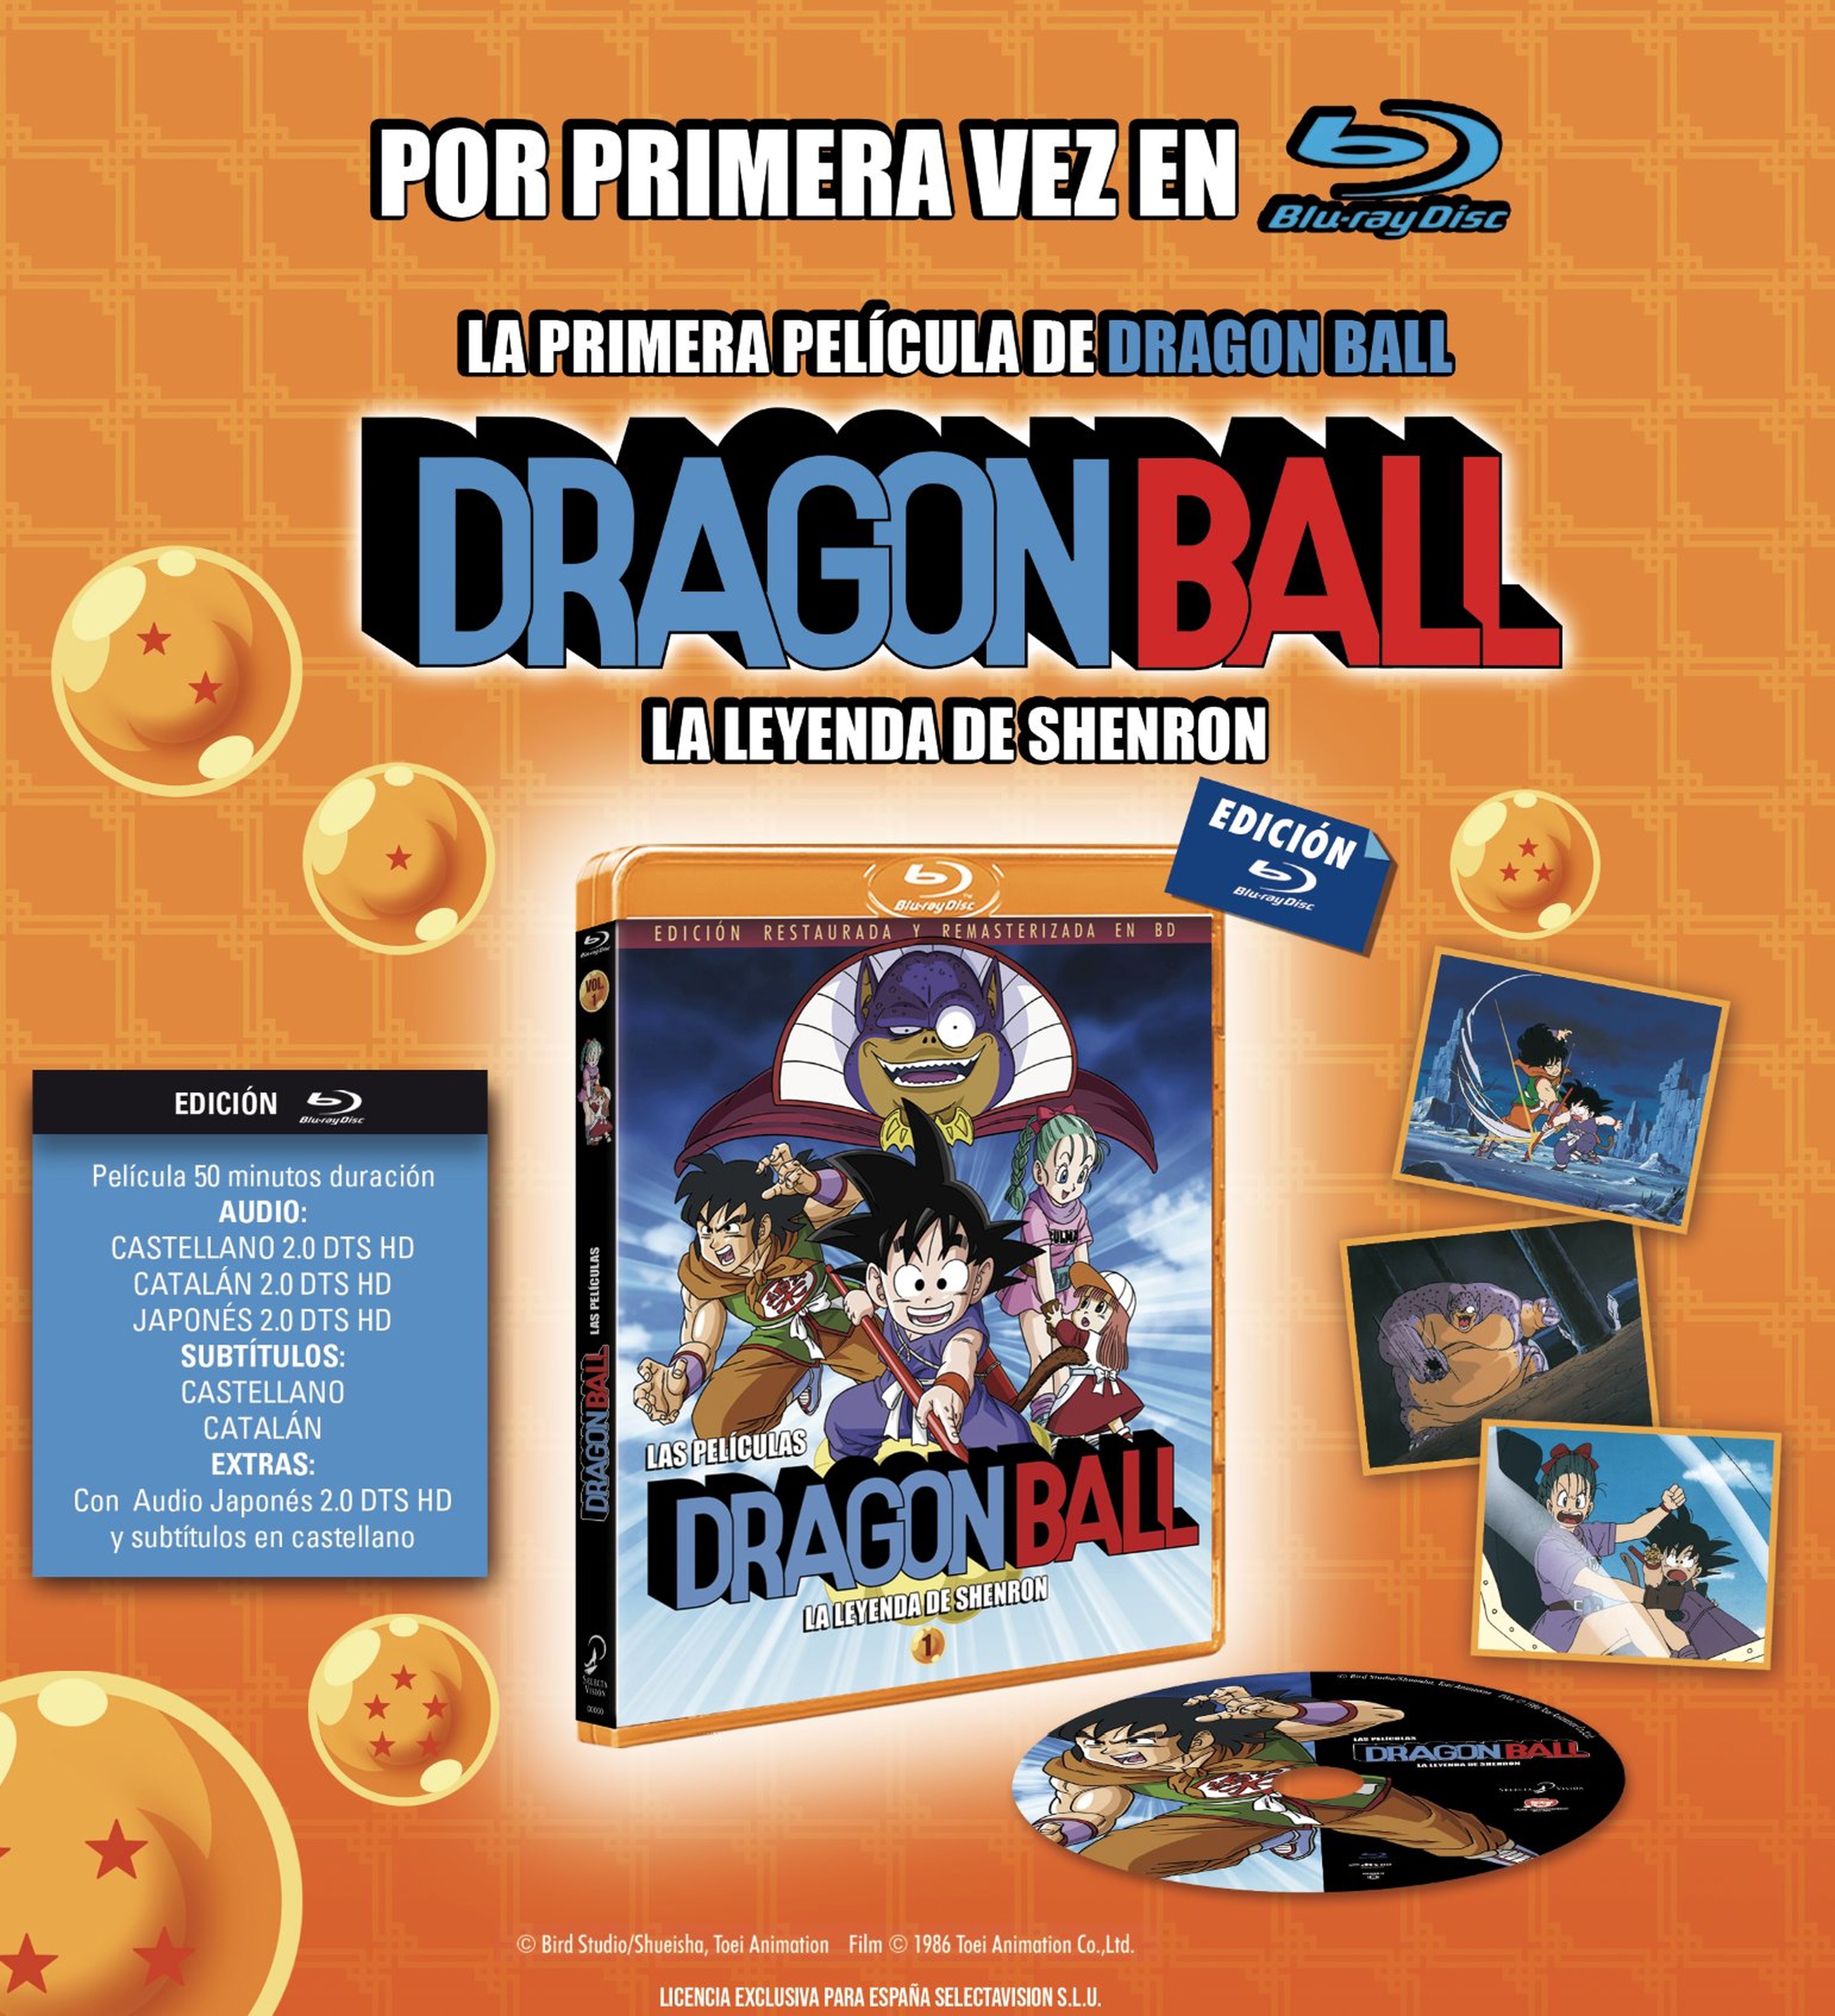 Dragon Ball - Las películas de la primera etapa de la serie se lanzarán en Blu-ray por primera vez en España